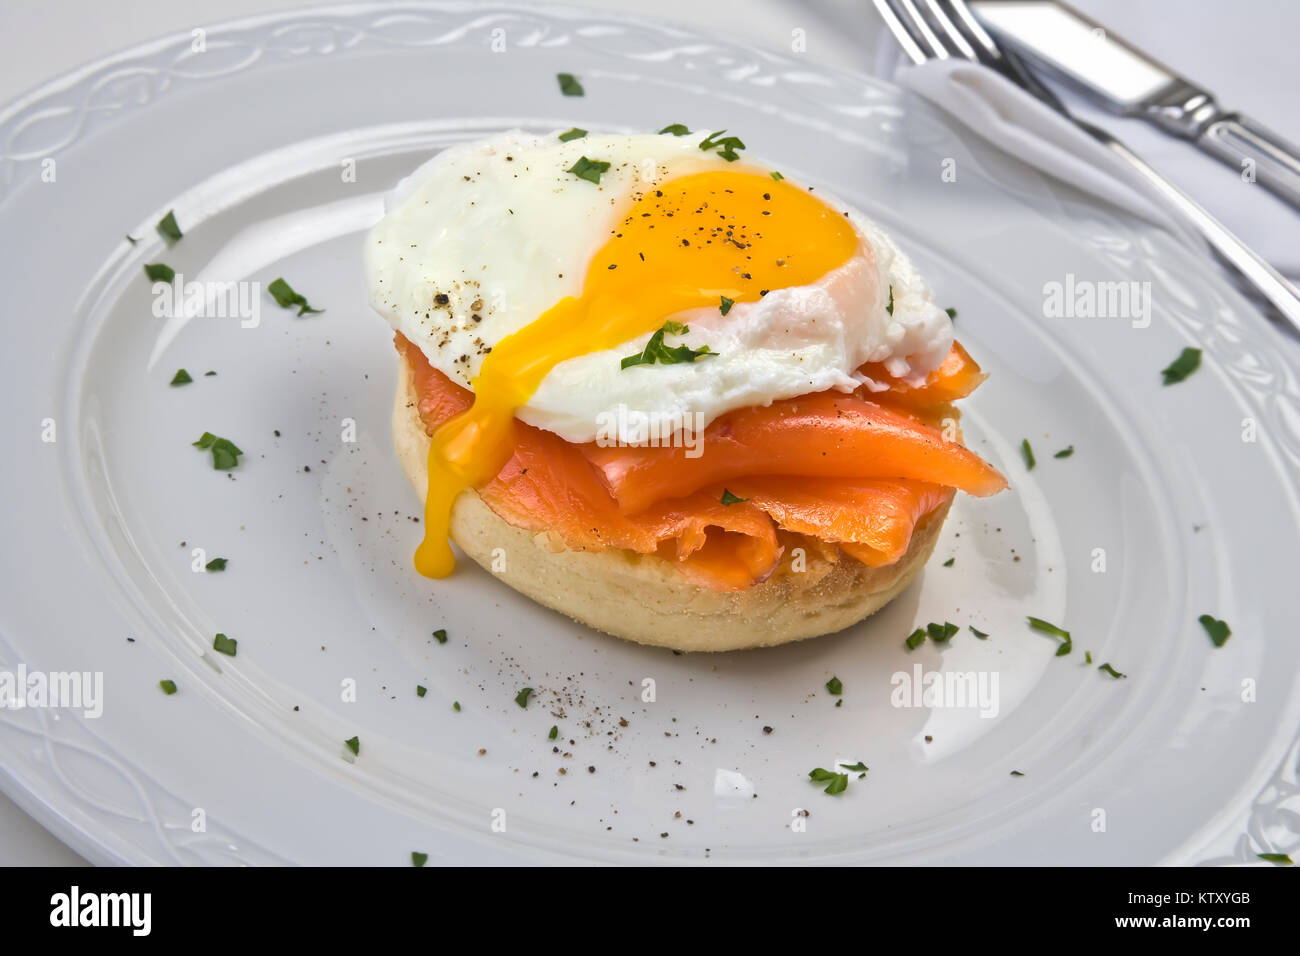 Soft œuf poché sur un muffin au saumon fumé grillé sur plaque blanche dentelle sur fond blanc Banque D'Images